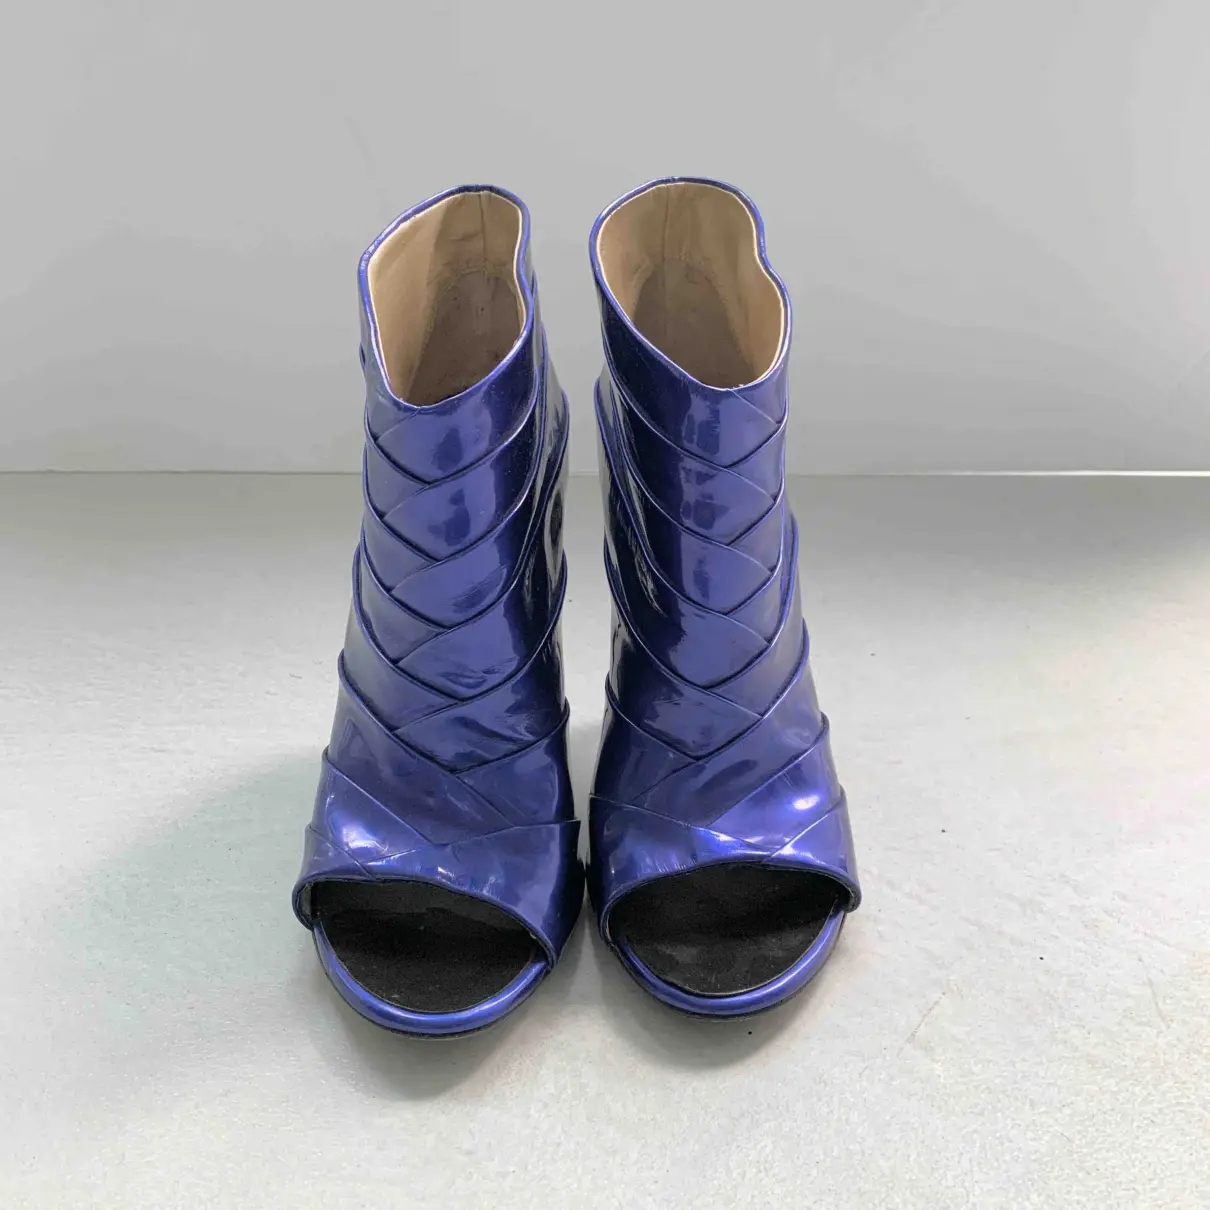 Patent leather open toe boots Giuseppe Zanotti